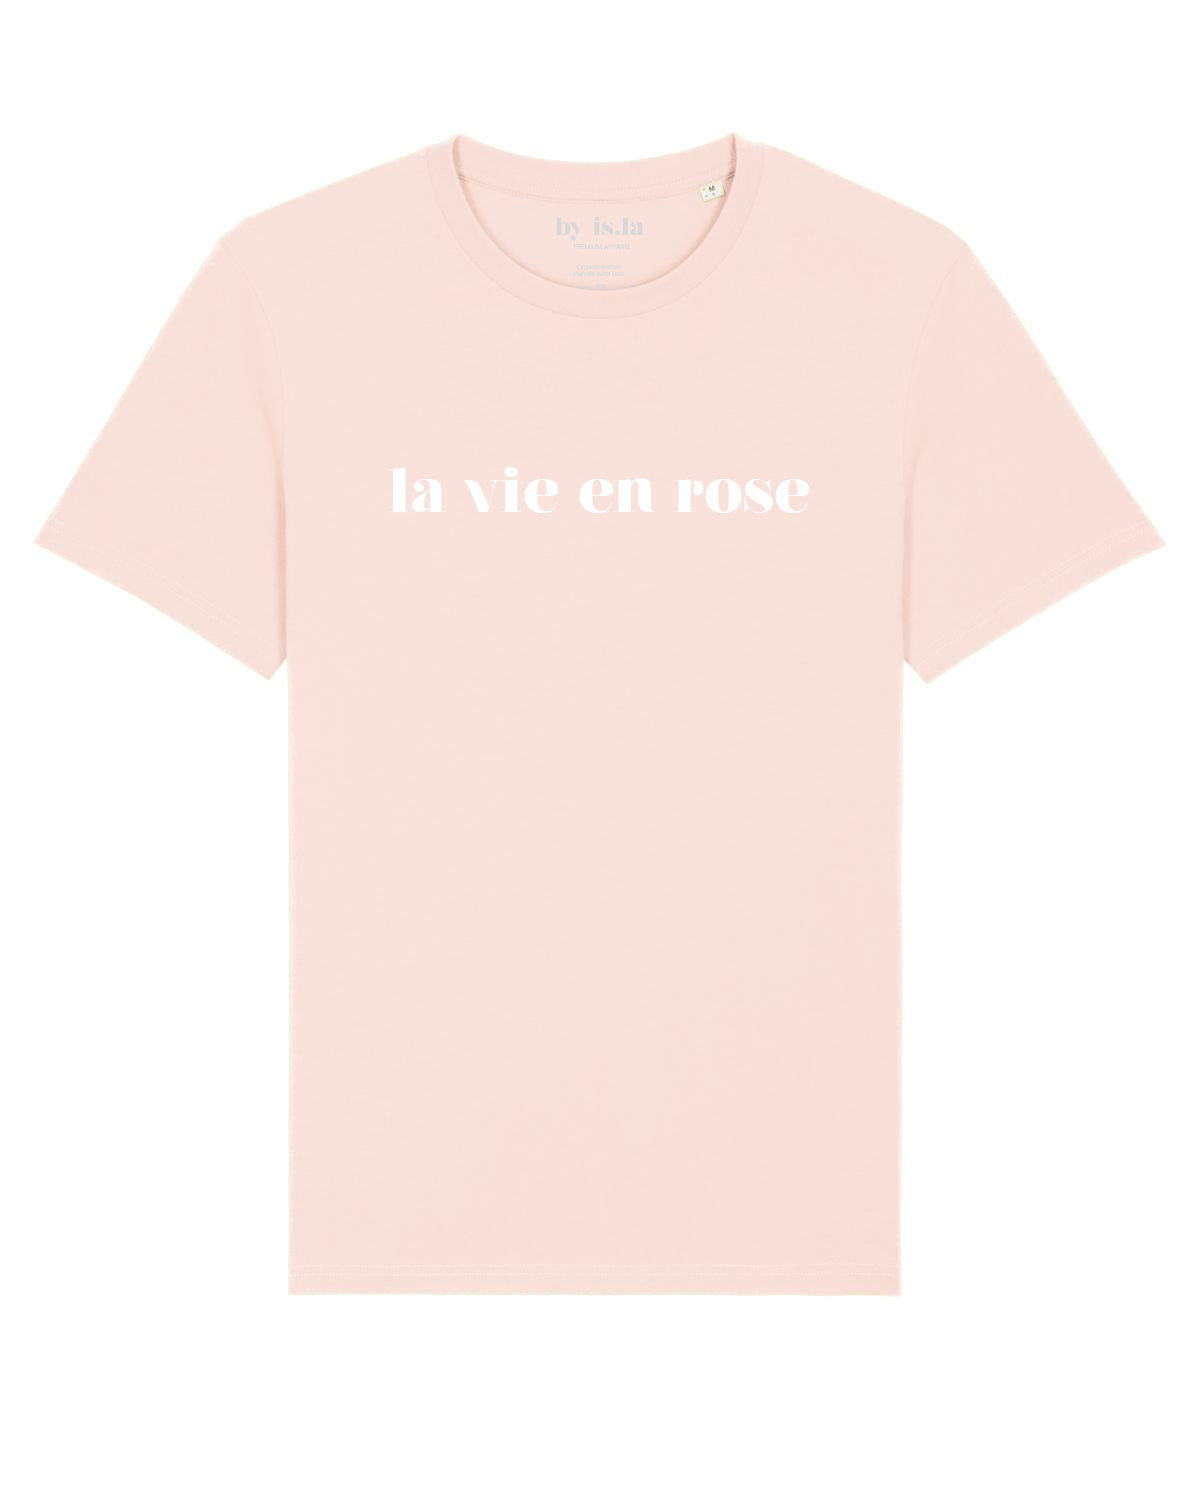 La vie en rose T-shirt